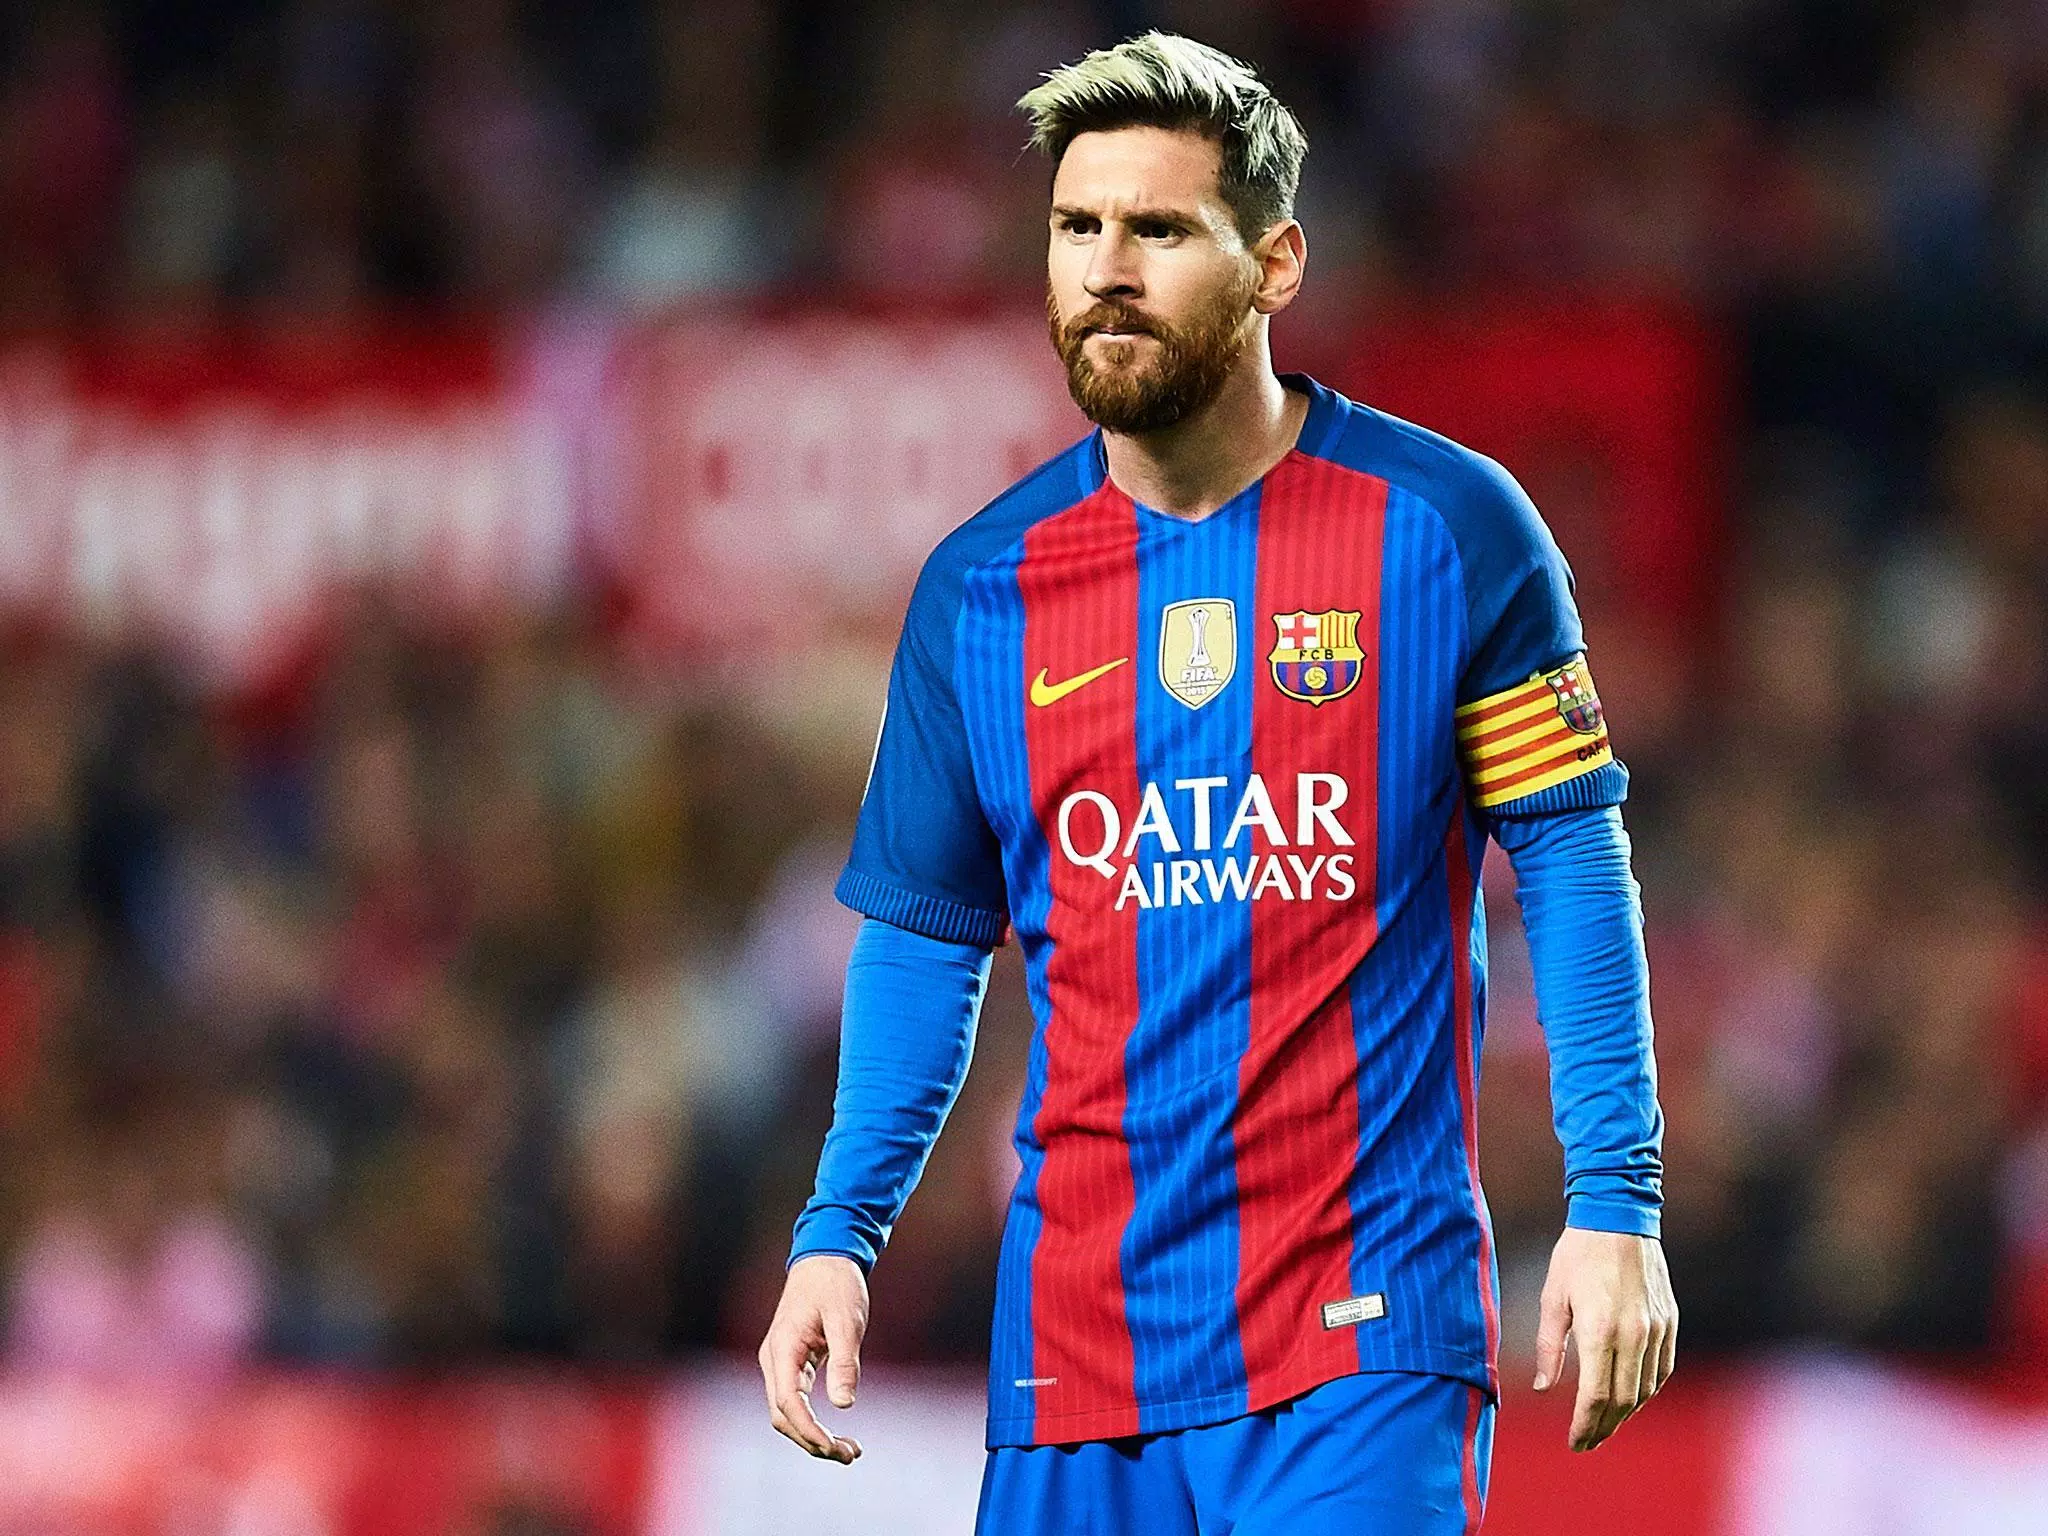 Tải ngay 4K Lionel Messi Wallpaper APK và đắm mình trong một thế giới đầy màu sắc của siêu sao bóng đá . Với độ phân giải cao, bộ sưu tập này sẽ cho bạn những hình nền đẹp mắt nhất về Messi. Chỉ với một thao tác cài đặt, hãy trải nghiệm ngay nhé!